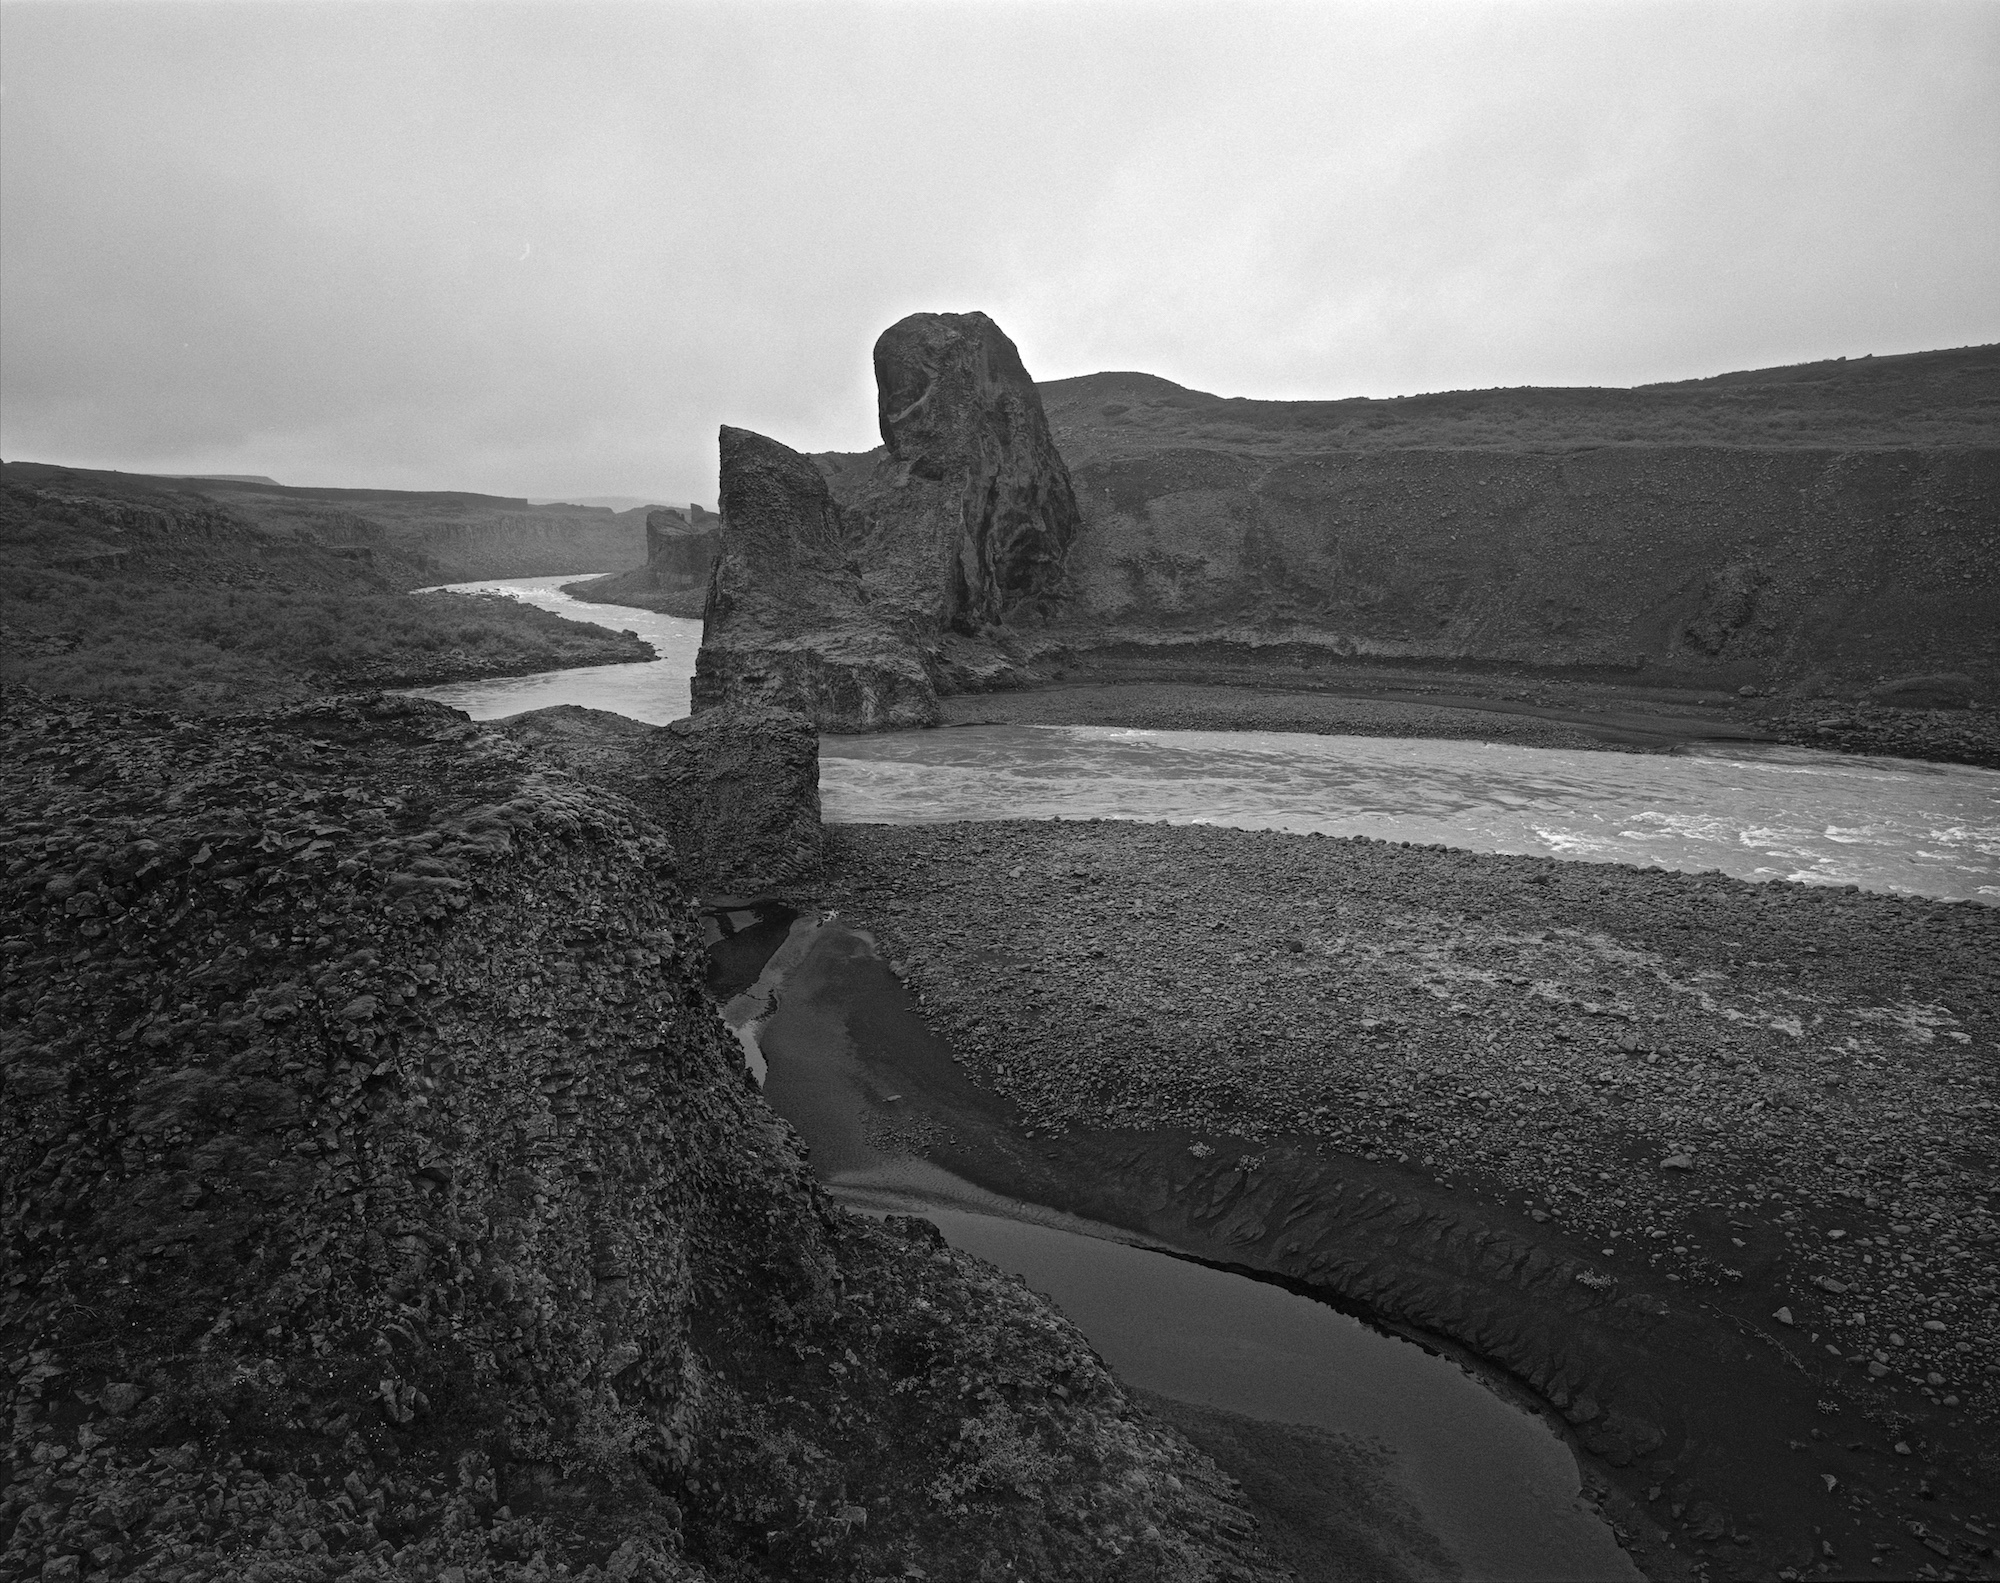 Hljóðaklettar ,Jökulsárgljúfur, North Iceland